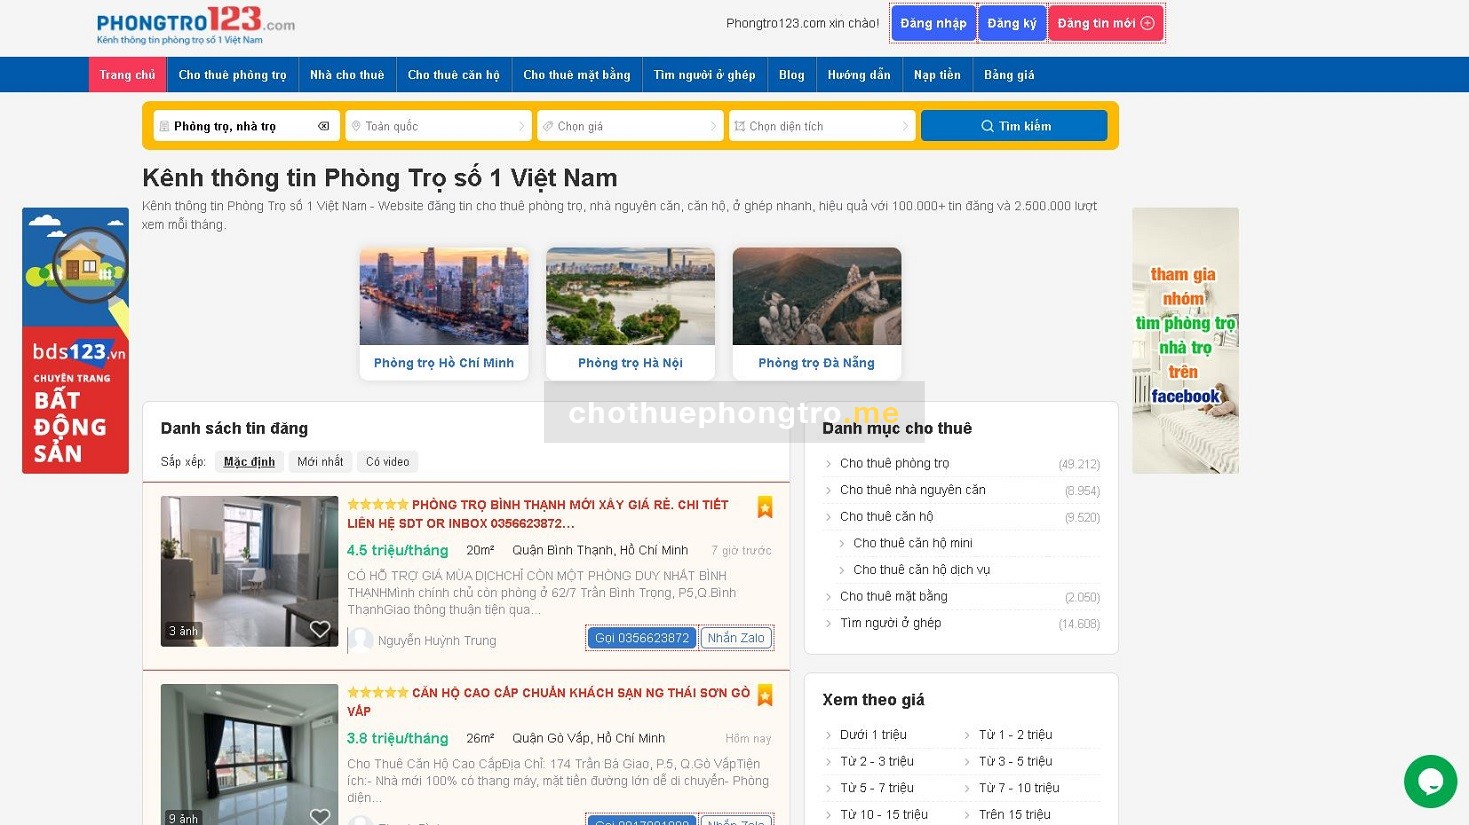 Phongtro123.com - Kênh thông tin phòng trọ số 1 Việt Nam